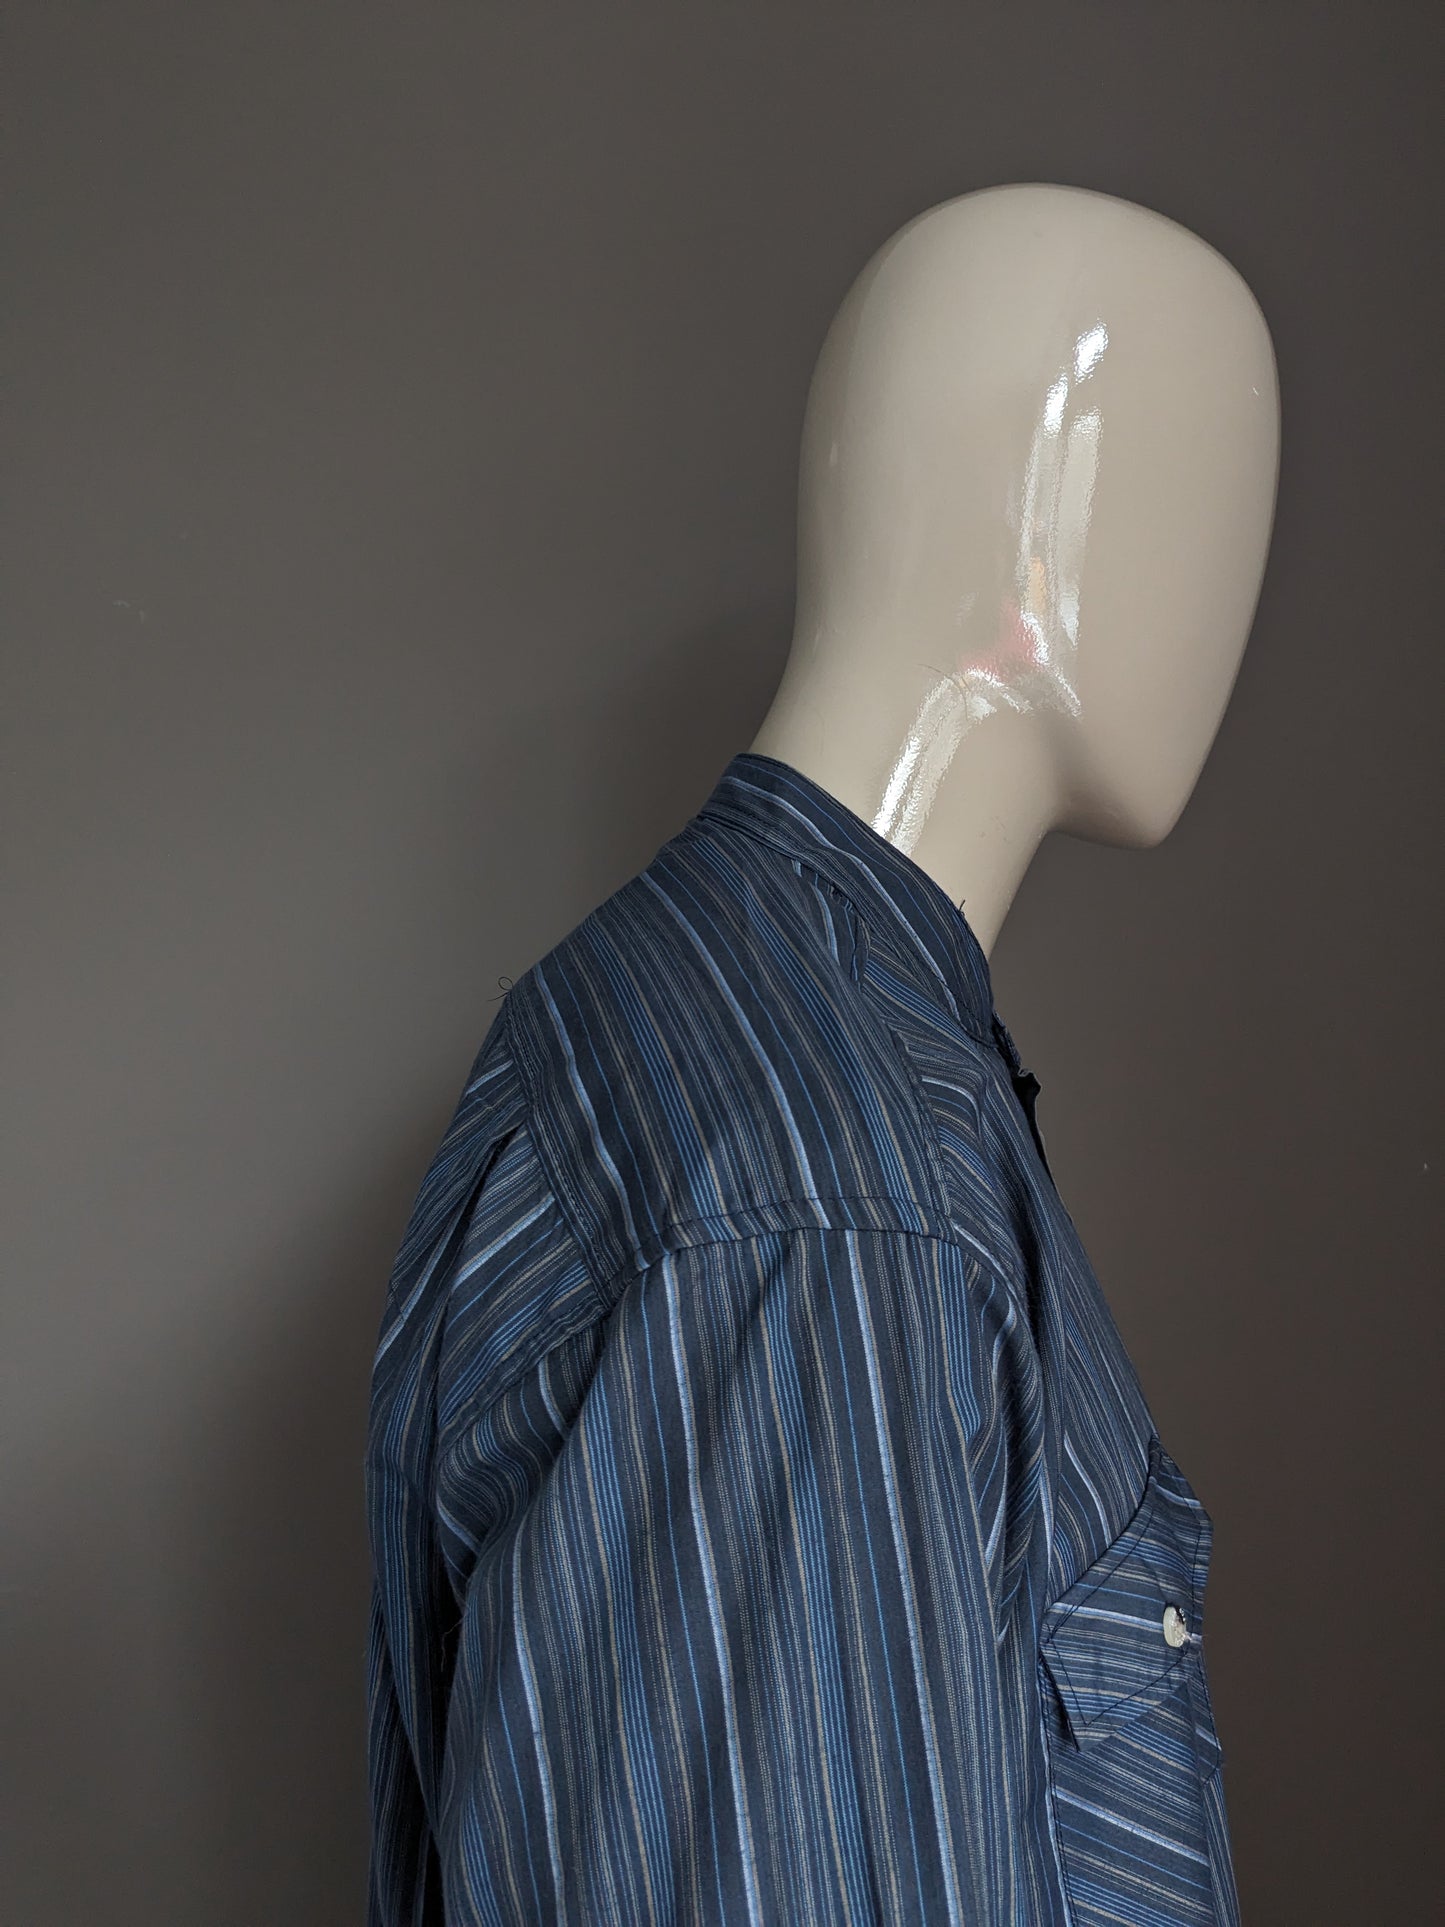 Camicia da camicia Atlas for Men con verticale / agricoltori / collare MAO. Strisce marrone blu. Dimensione 2xl / xxl.